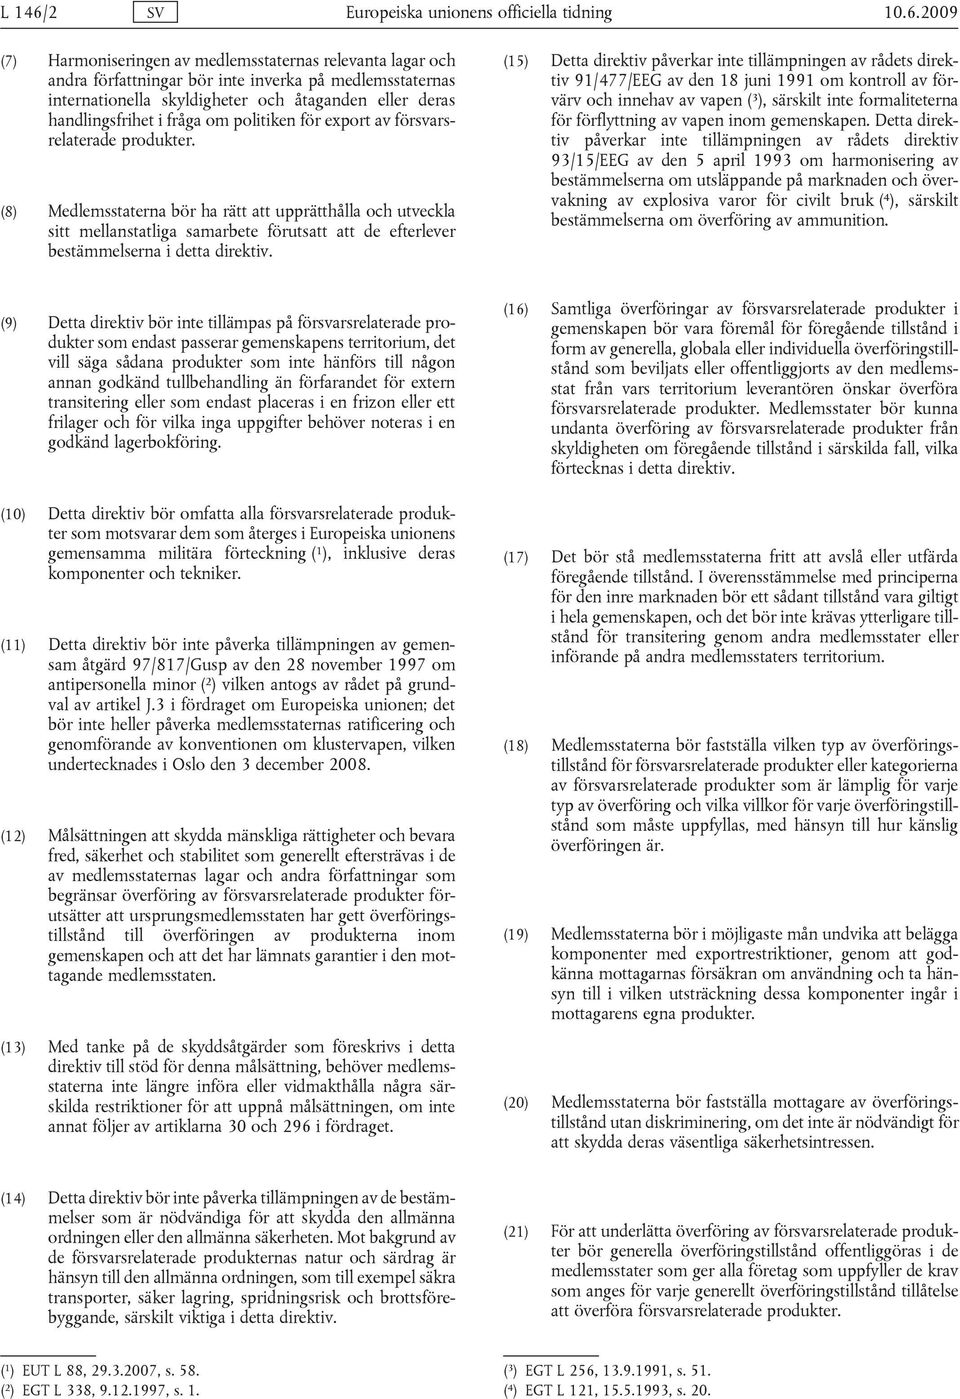 2009 (7) Harmoniseringen av medlemsstaternas relevanta lagar och andra författningar bör inte inverka på medlemsstaternas internationella skyldigheter och åtaganden eller deras handlingsfrihet i